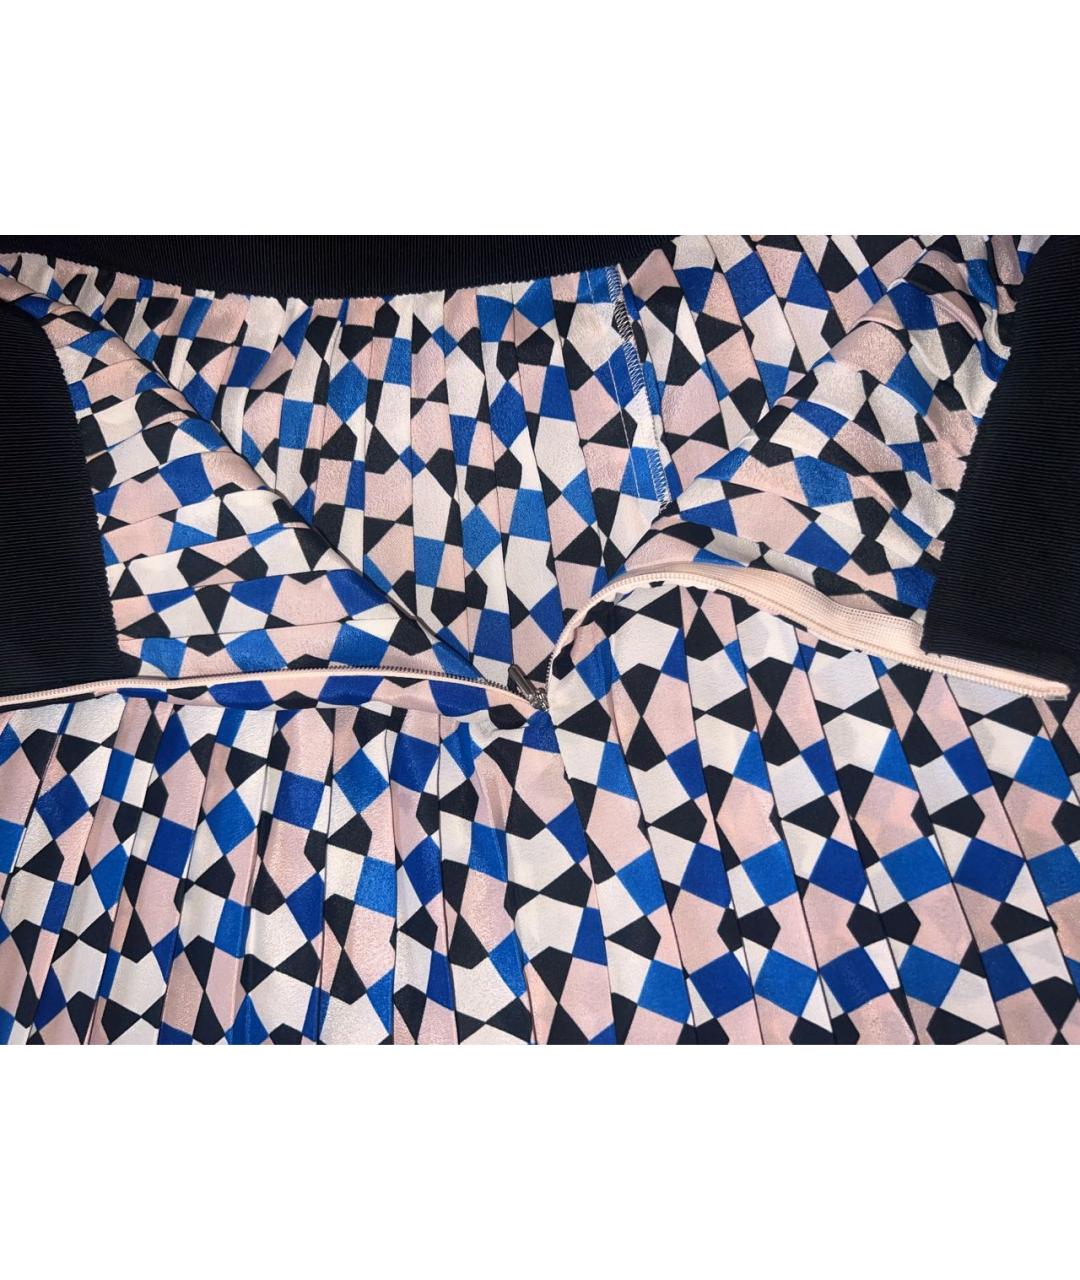 SPORT MAX CODE Мульти полиэстеровая юбка мини, фото 2